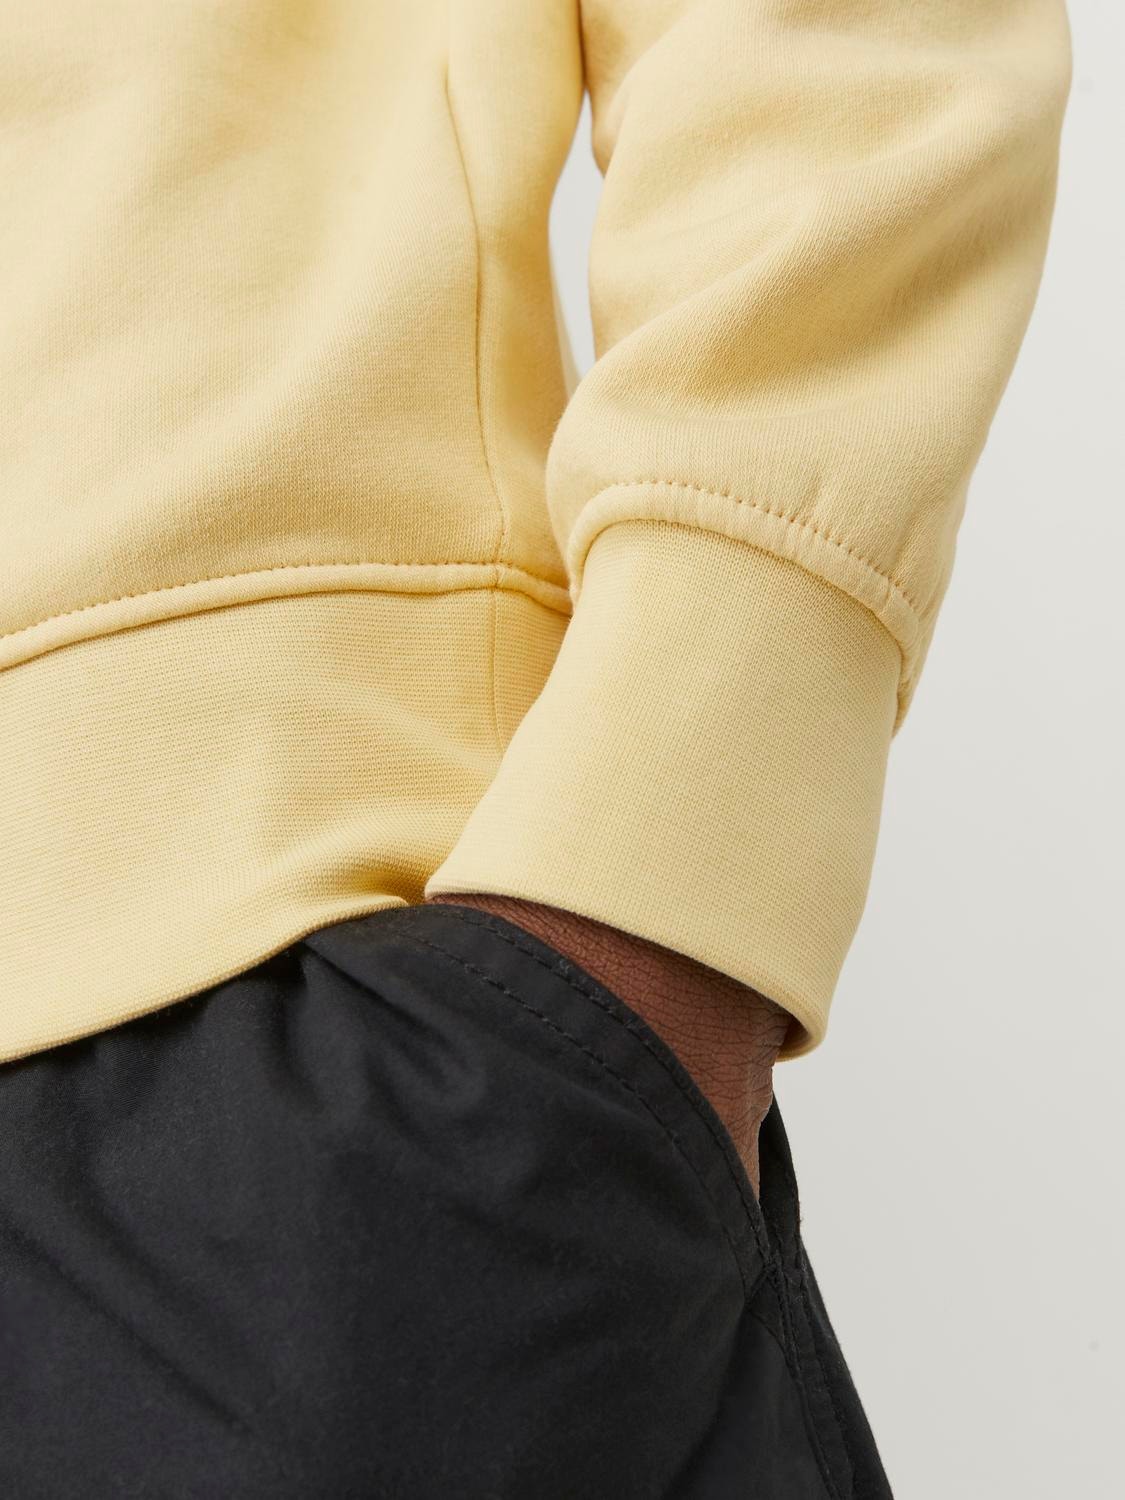 Jack & Jones Gedrukt Sweatshirt met ronde hals -Italian Straw - 12241694